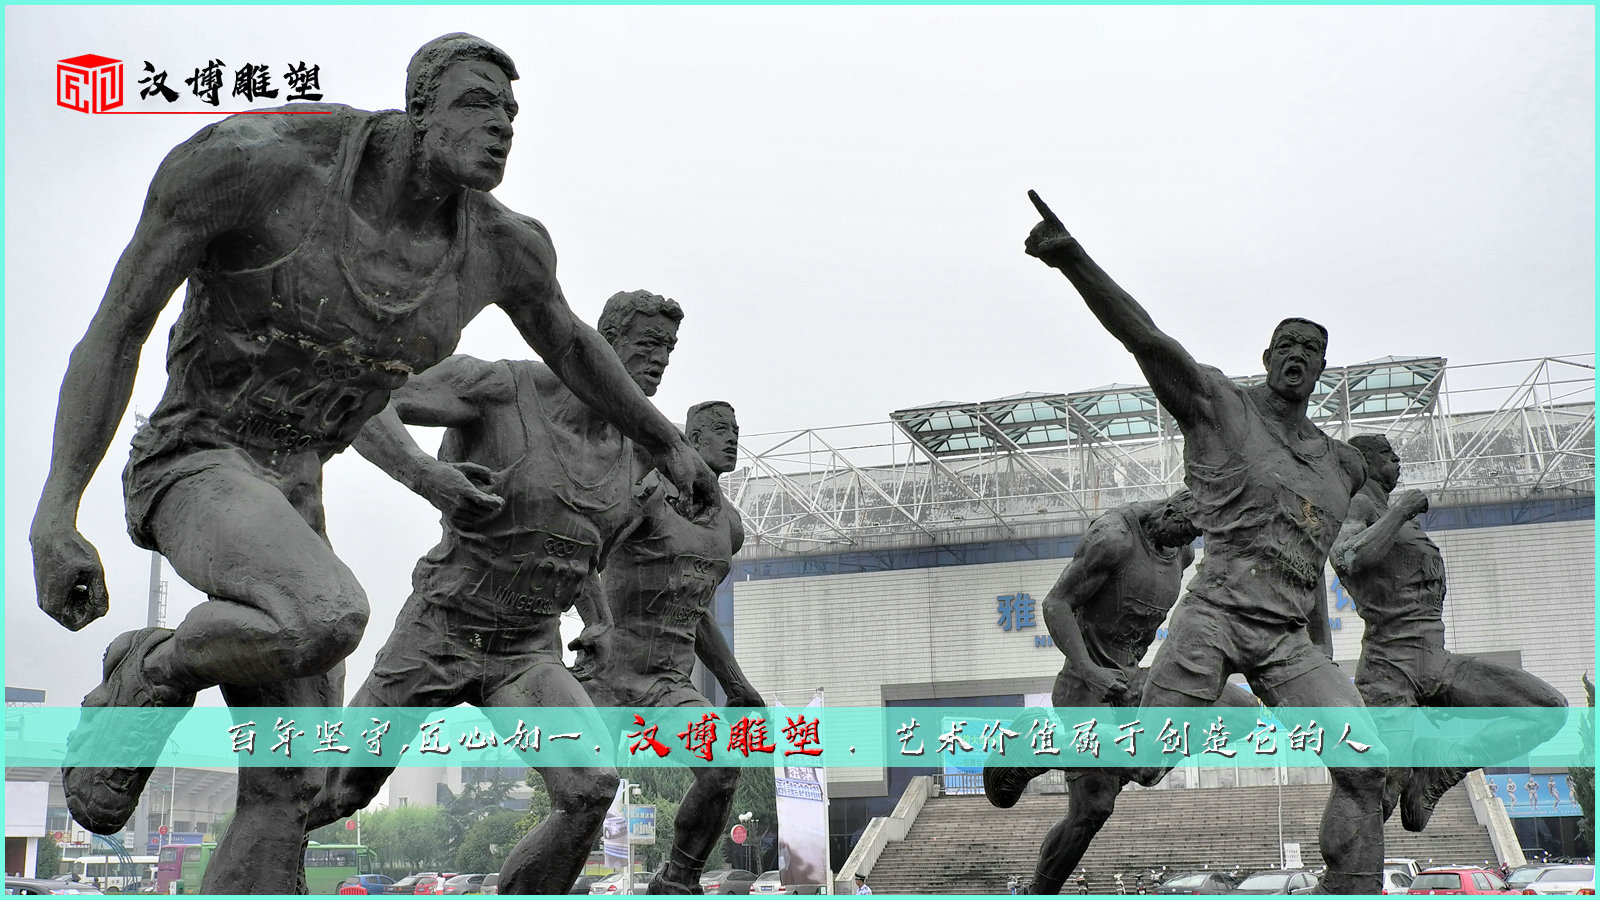 运动主题雕塑,体育运动人物雕像,体育运动员雕塑